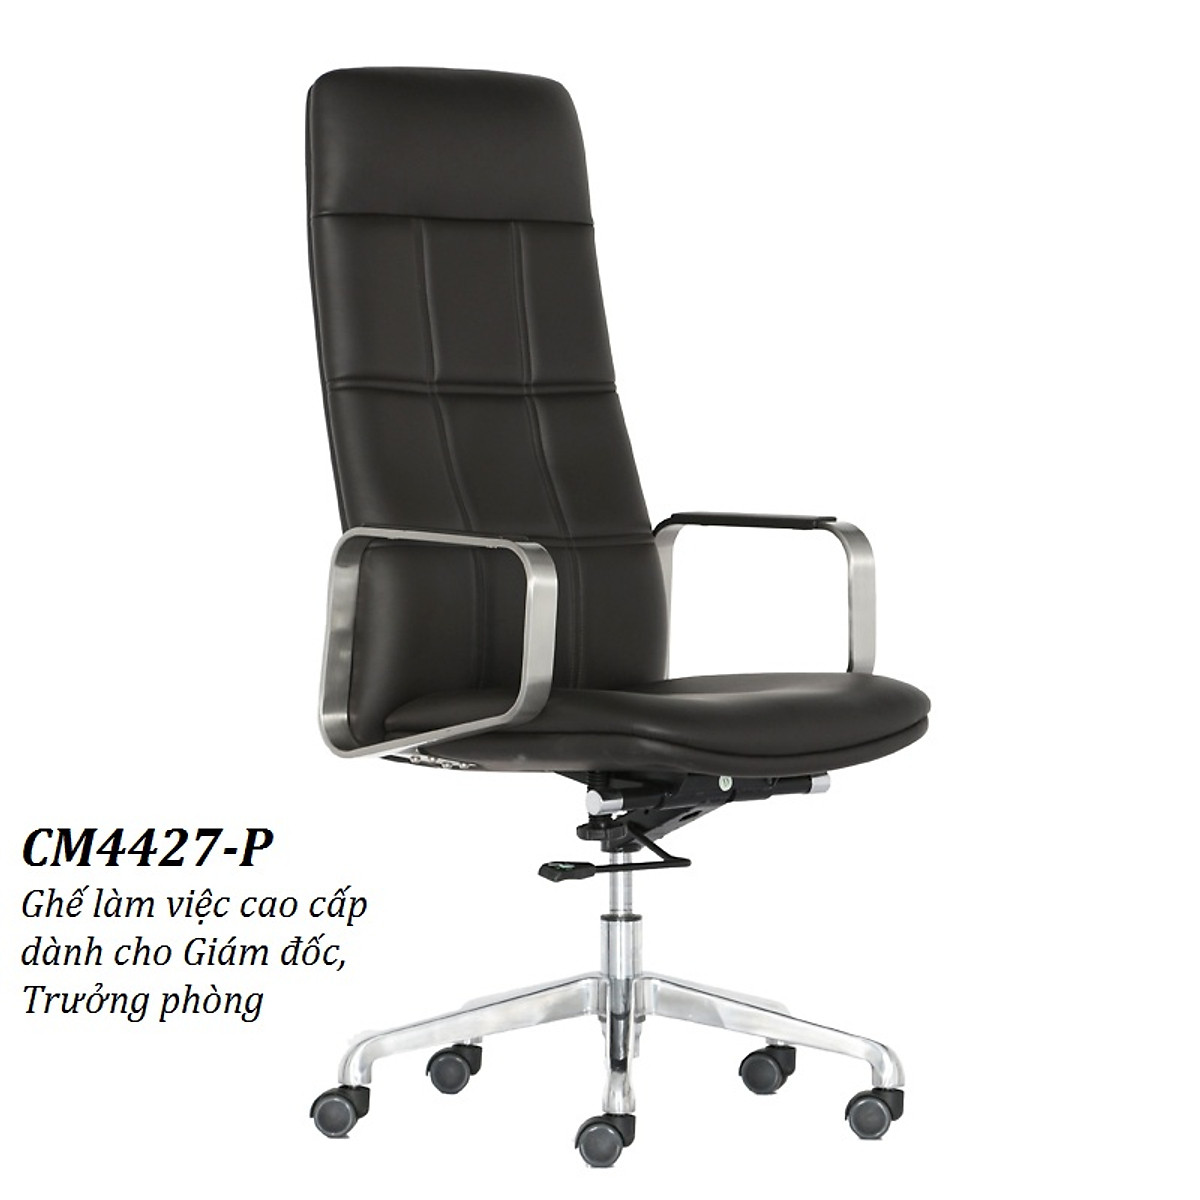 Mua Leather Director's Chair Ghế giám đốc ghế lãnh đạo cấp cao ngồi làm  việc tại văn phòng ngồi làm việc tại nhà lưng cao nhập khẩu CM4427-P Tay  ghế hợp kim